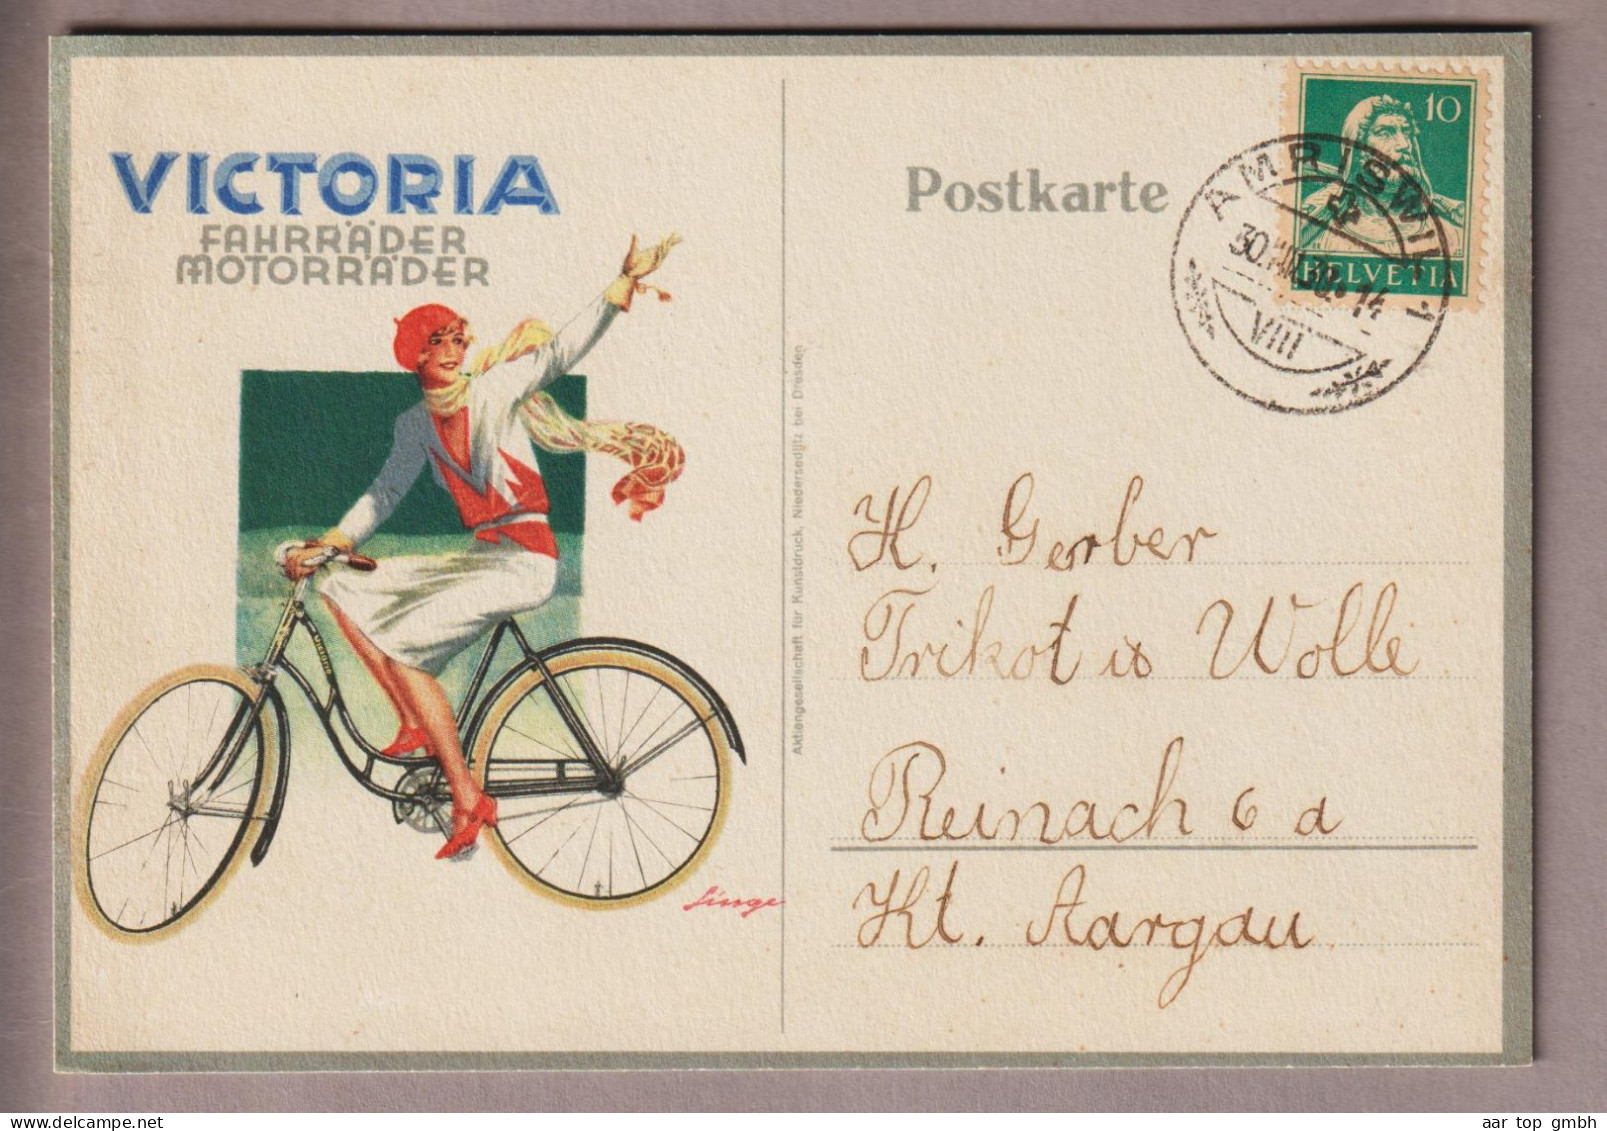 Motiv Fahrräder/Motorräder Illustrierte Postkarte Von Amriswil Nach Reinach "Victoria" - Wielrennen